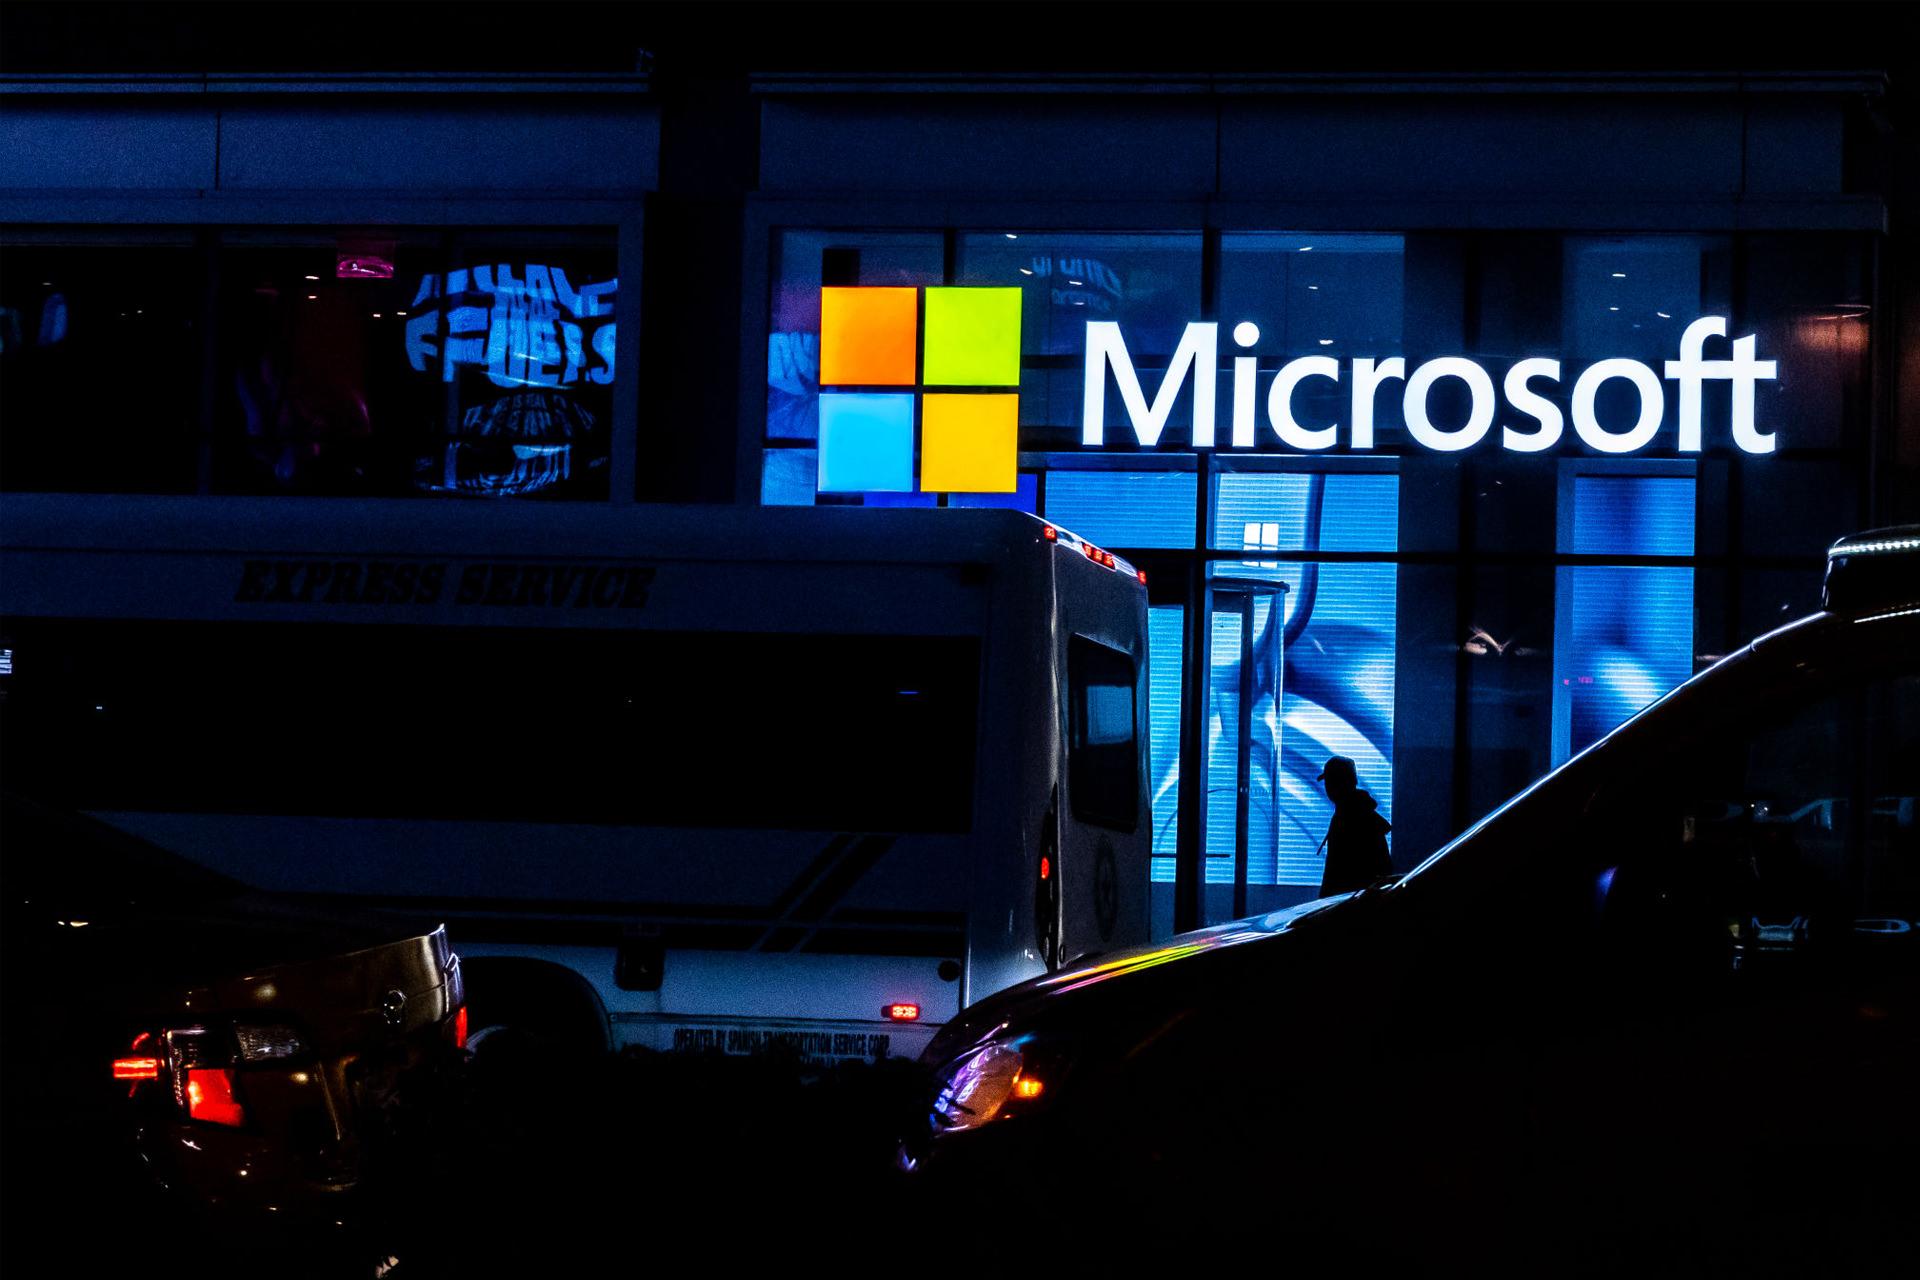 مرجع متخصصين ايران لوگو مايكروسافت / Microsoft روي ورودي ساختمان در شب